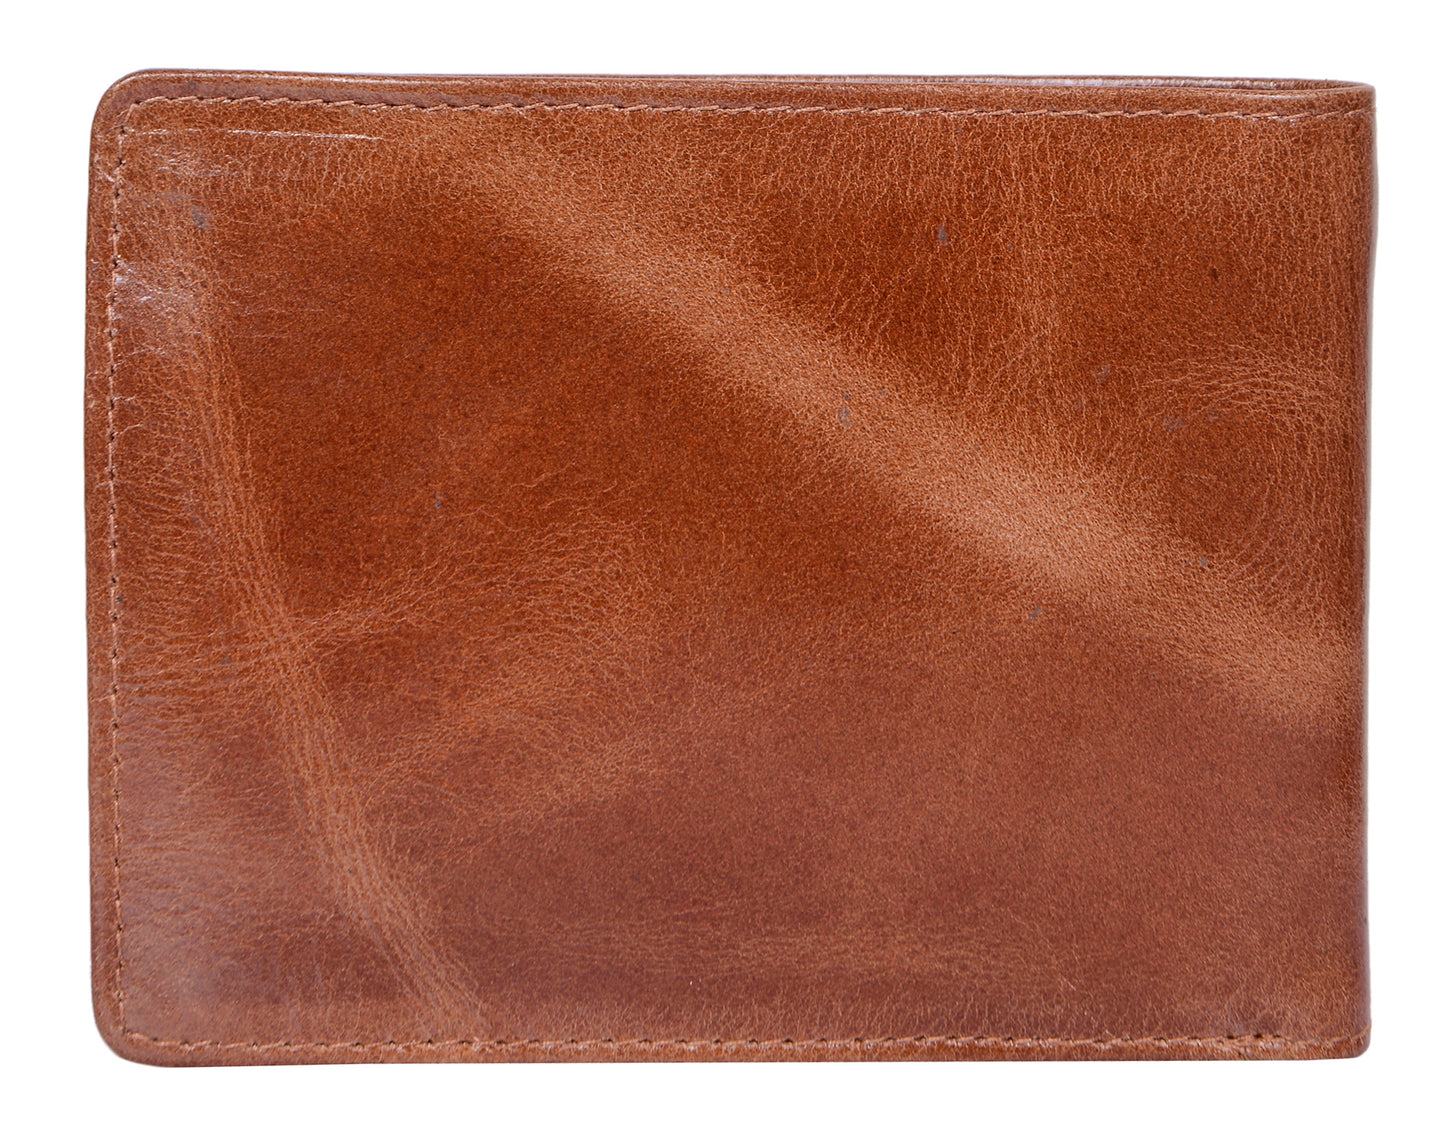 Calfnero Genuine Leather  Men's Wallet (1144-Camel)